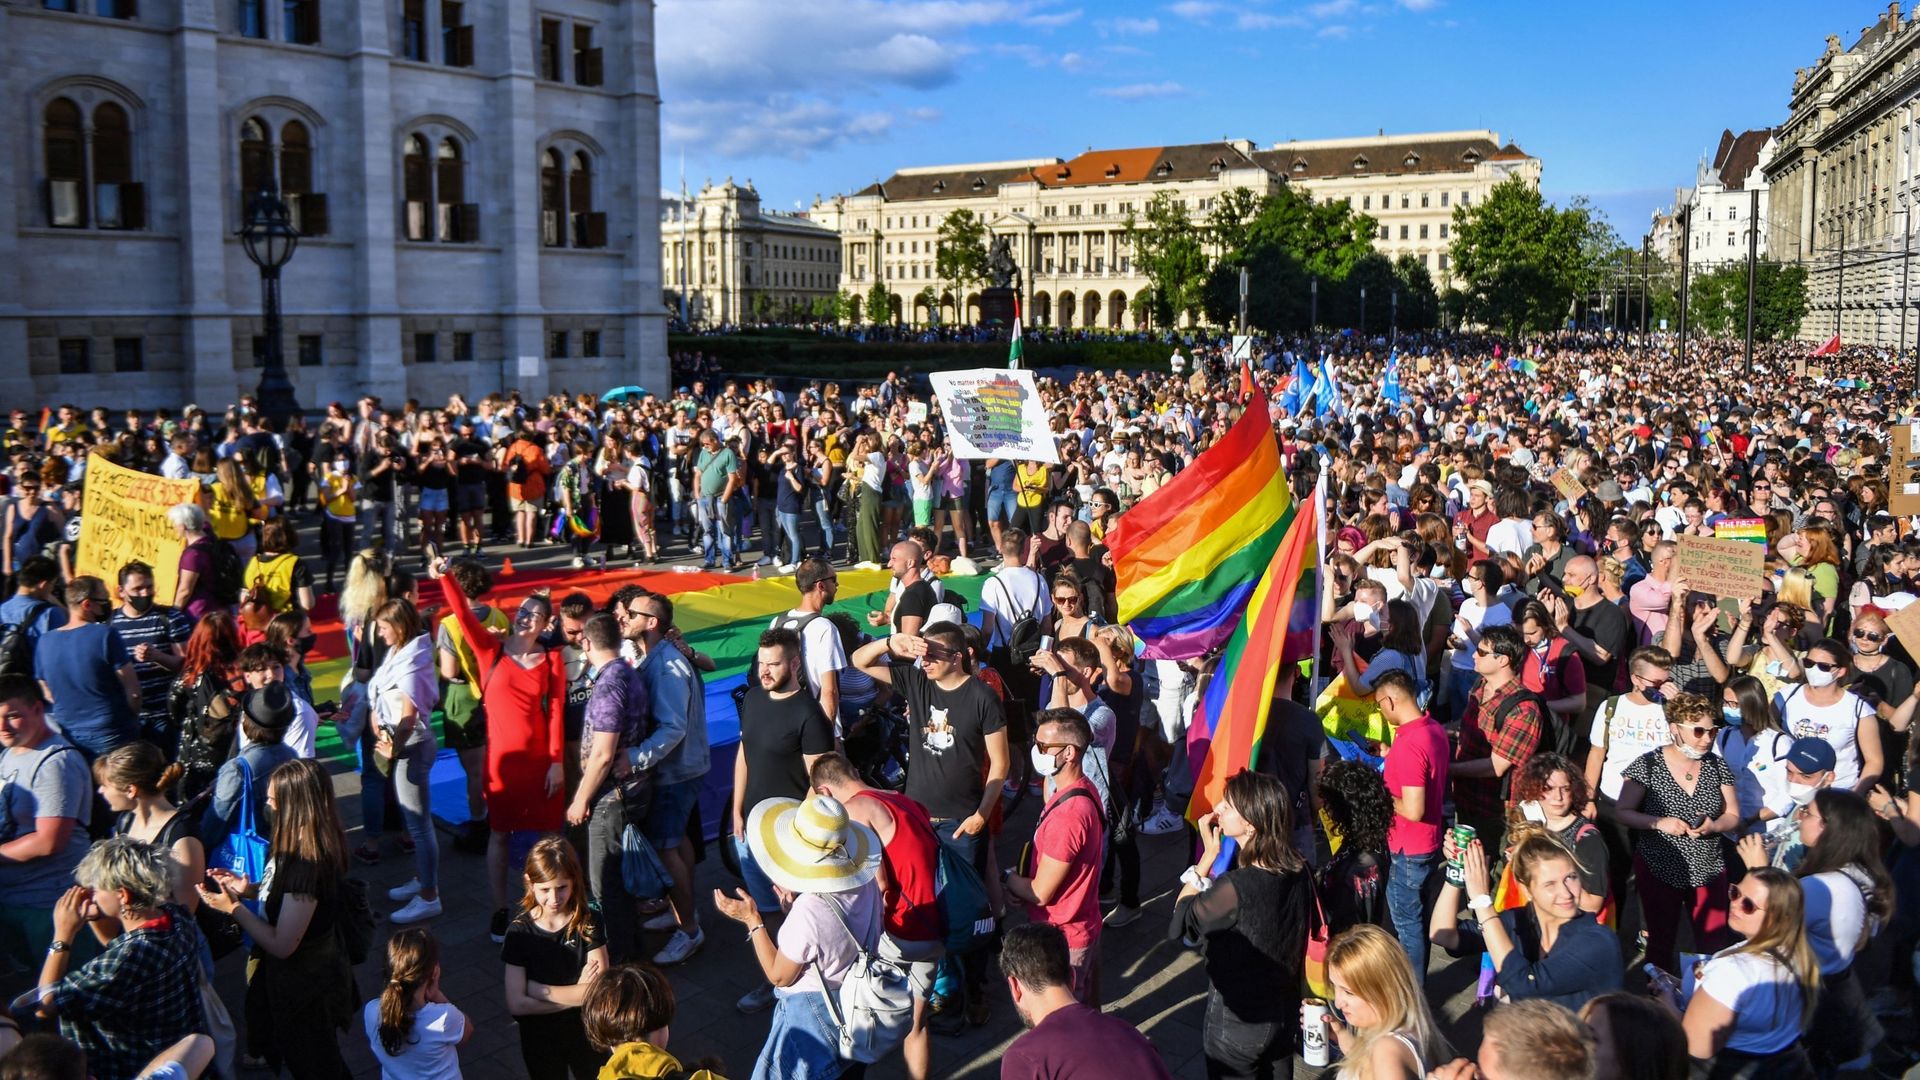 La loi hongroise sur la promotion de l’homosexualité est une "honte" pour la Commission européenne. Manifestation d’opposition à Budapest le 14 juin.